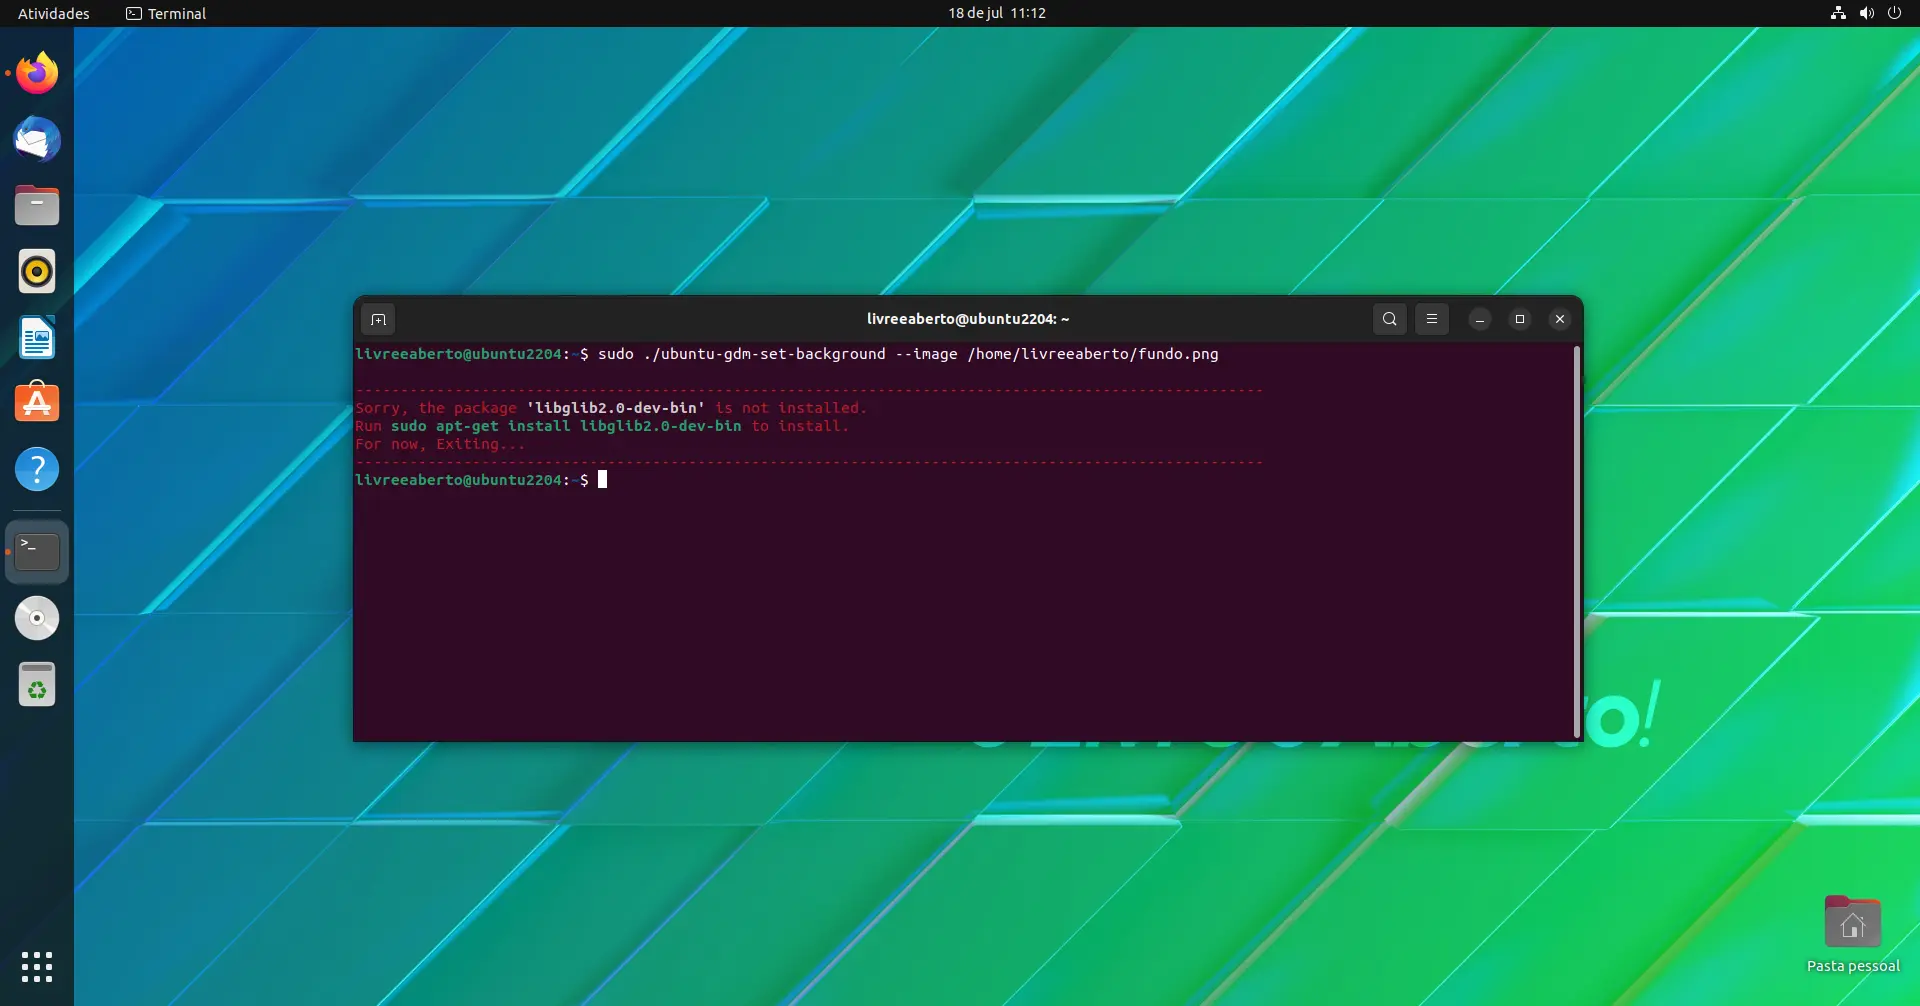 Alerta de pacotes faltando para alterar a tela de fundo do login no Ubuntu